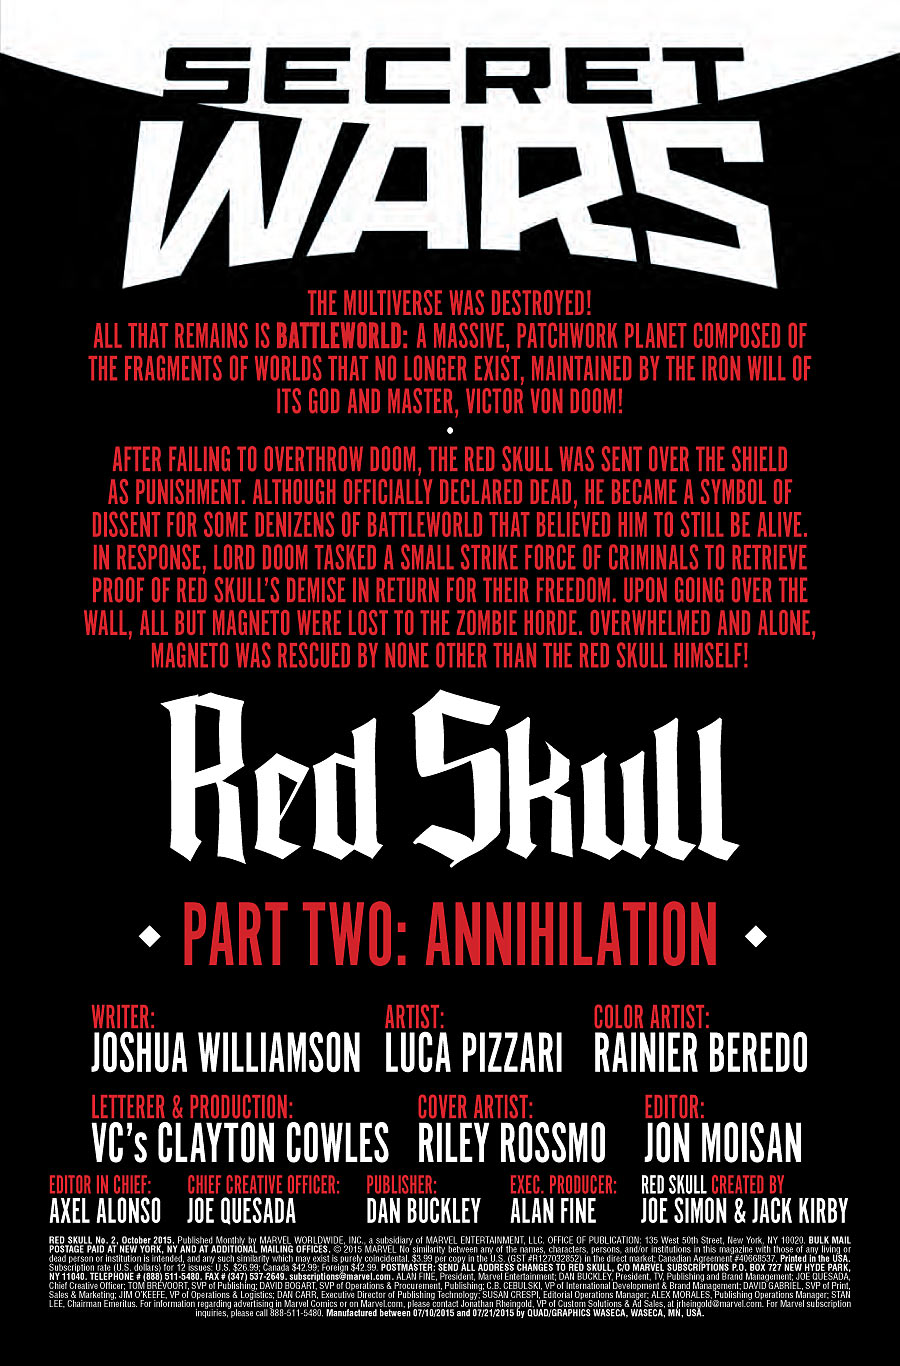 Red Skull #2